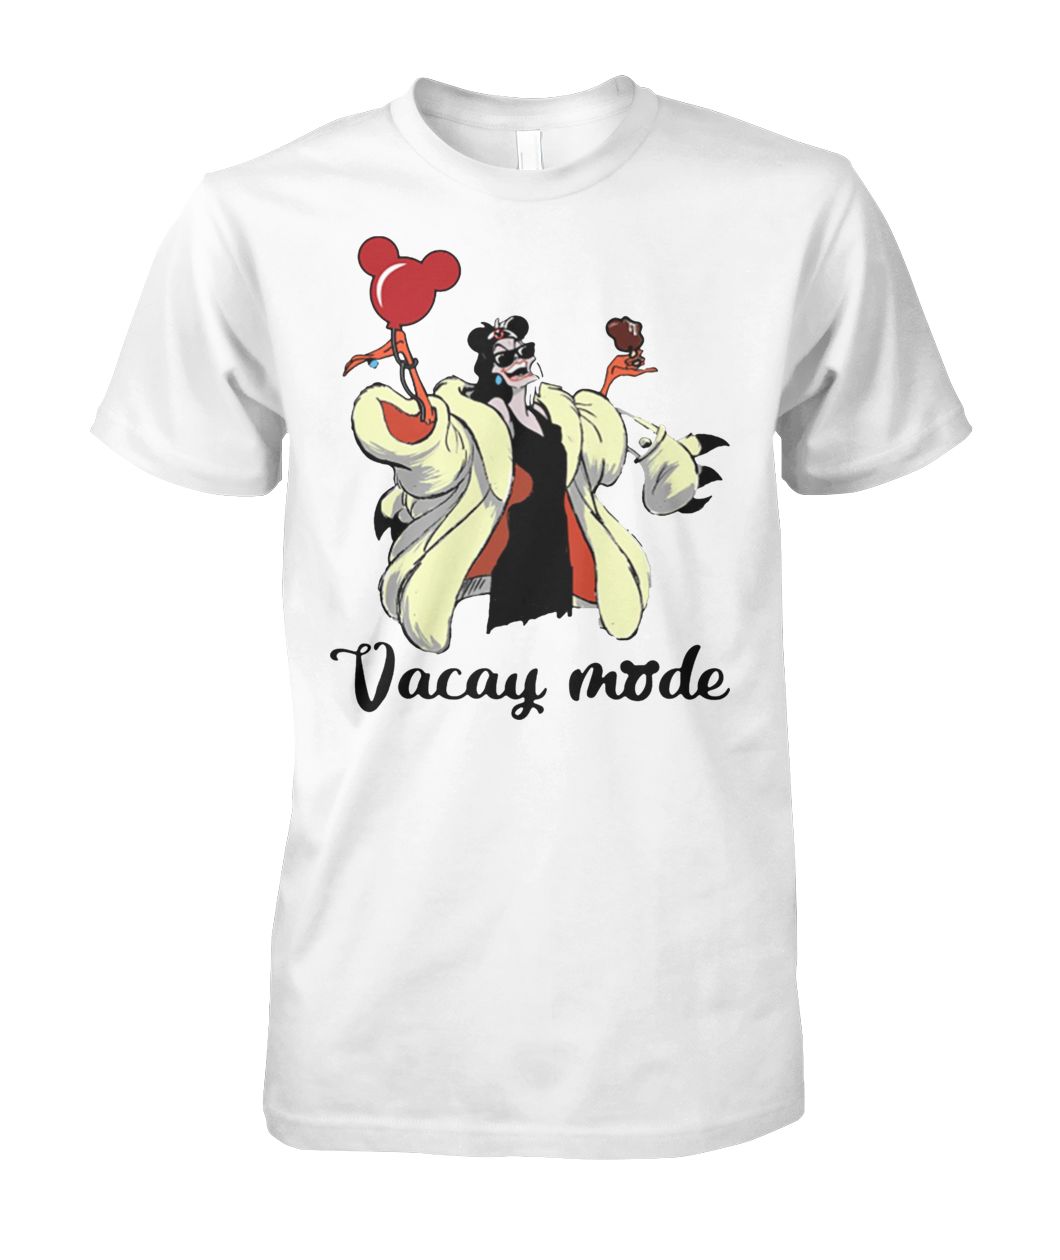 Cruella de Vil vacay mode balloon mickey mouse shirt